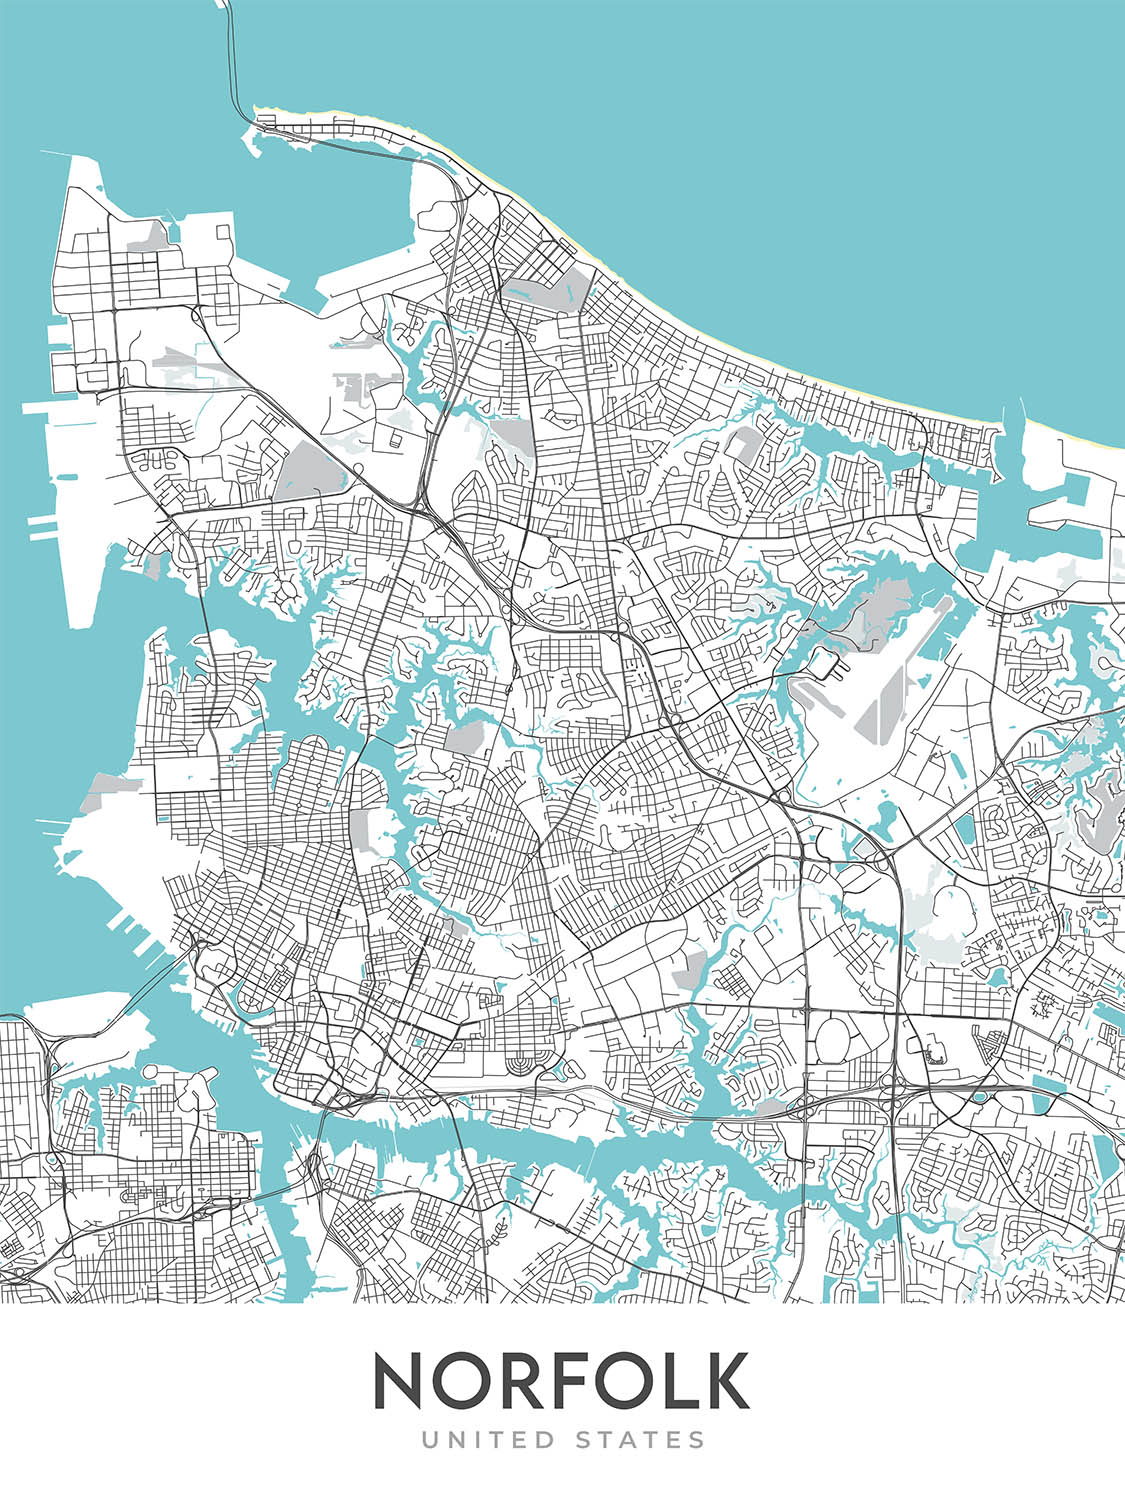 Mapa moderno de la ciudad de Norfolk, VA: Gante, Museo Chrysler, Nauticus, Jardín Botánico de Norfolk, I-264